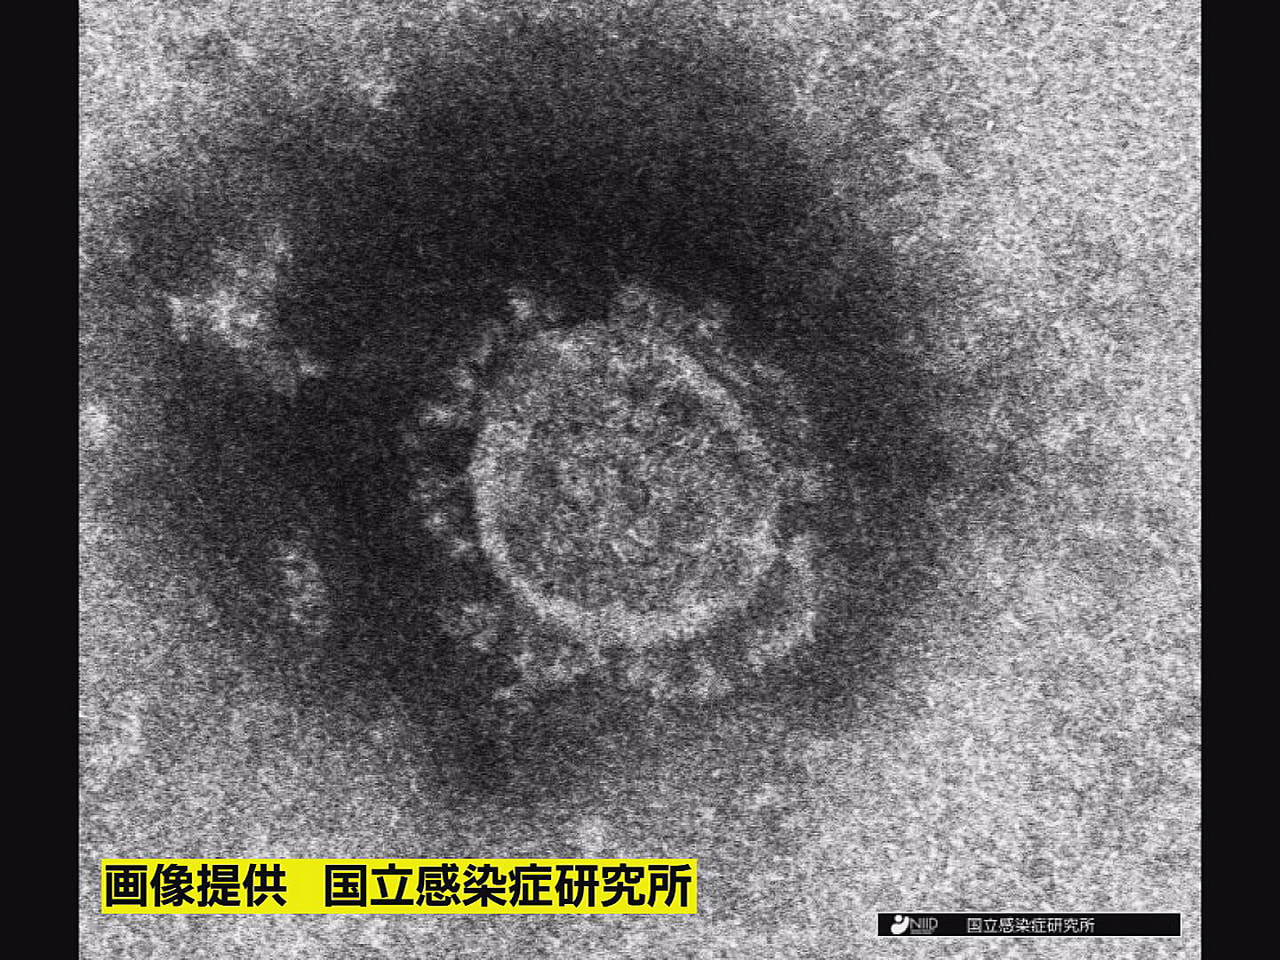 岐阜県は４日、新型コロナウイルスの新たな感染者が２２３人確認されたと発表しました...